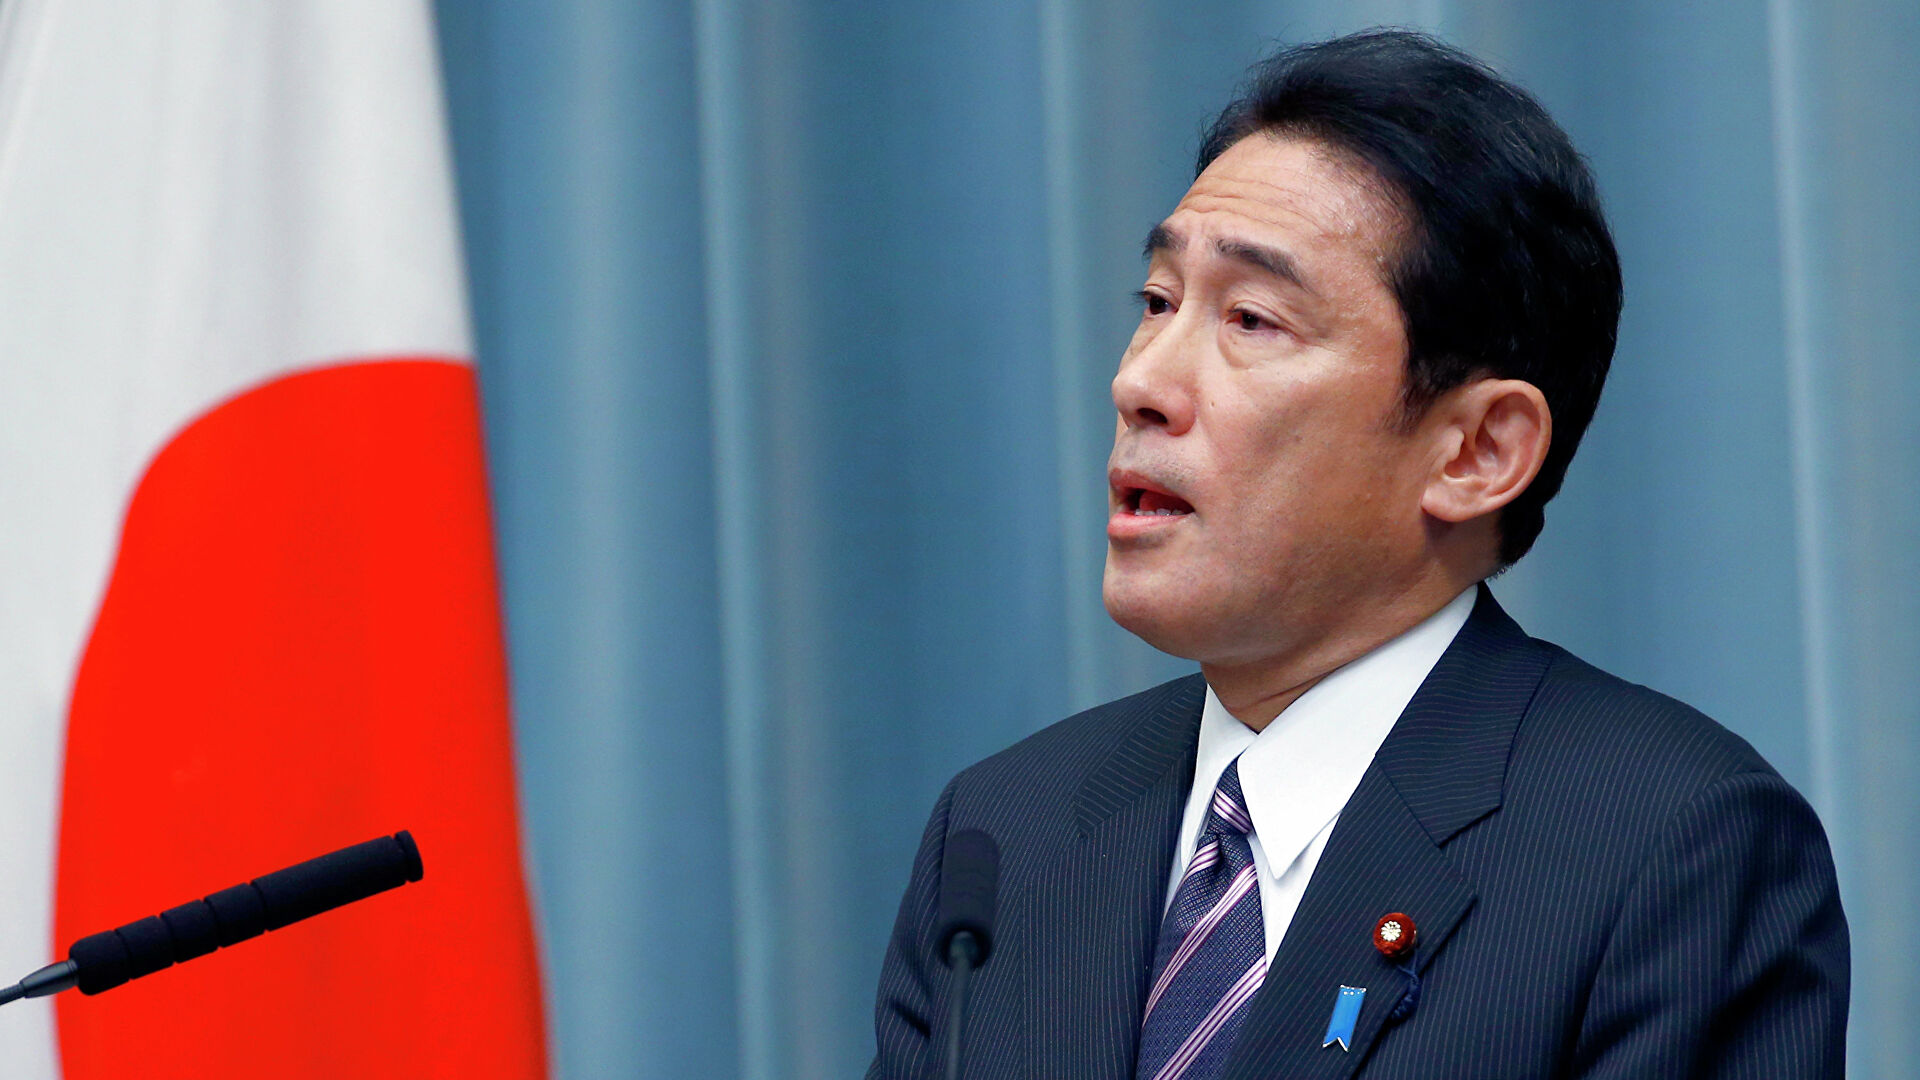 Japón levantará sanciones contra Rusia por acciones al este de Ucrania